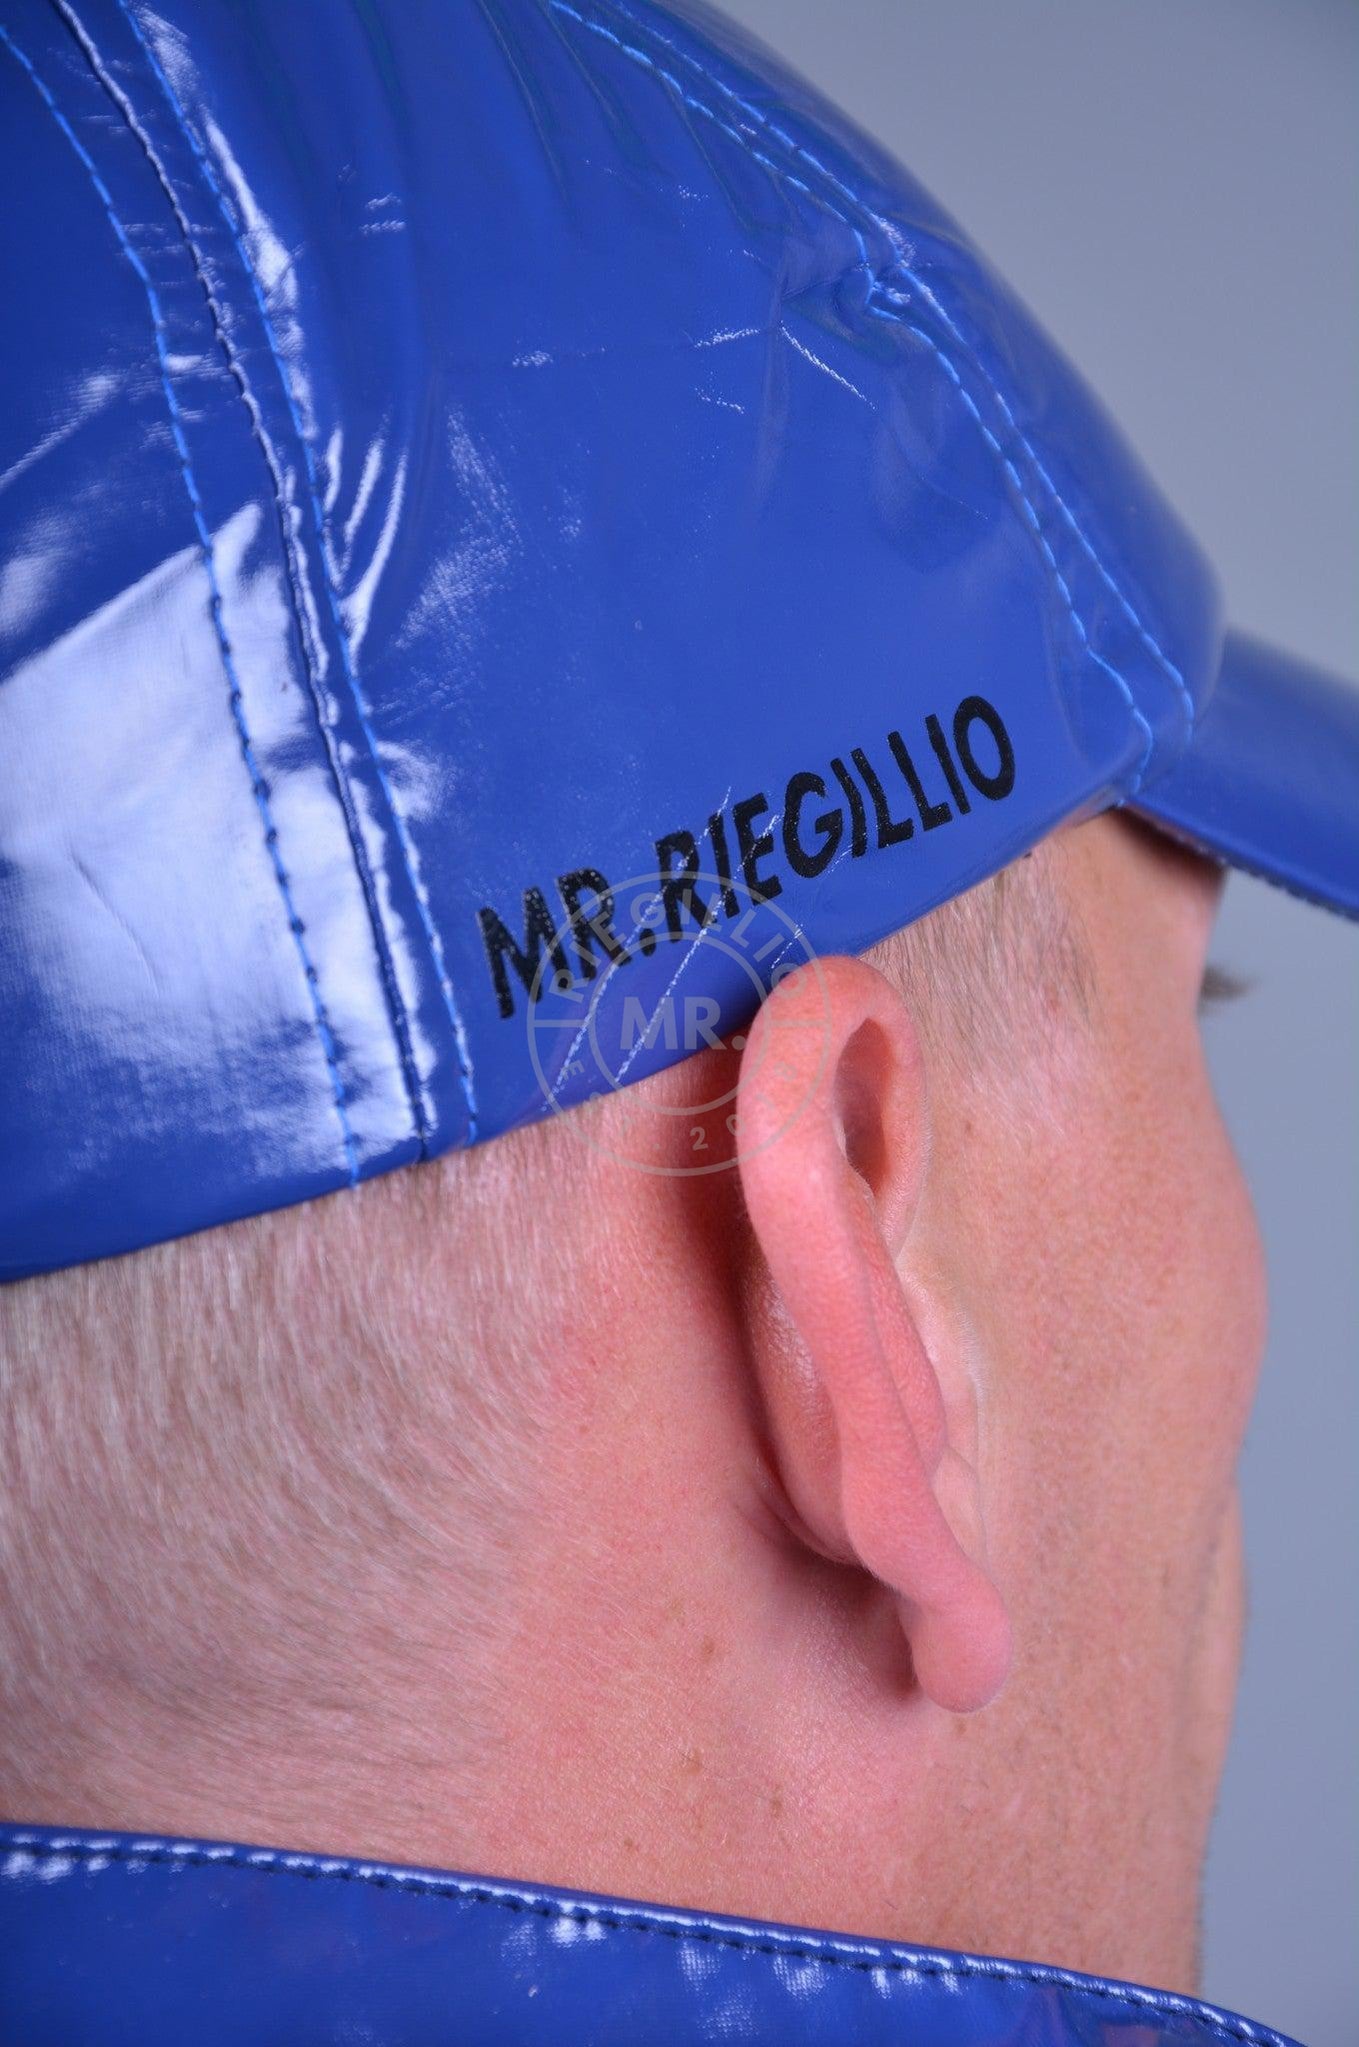 Blue PVC Cap-at MR. Riegillio